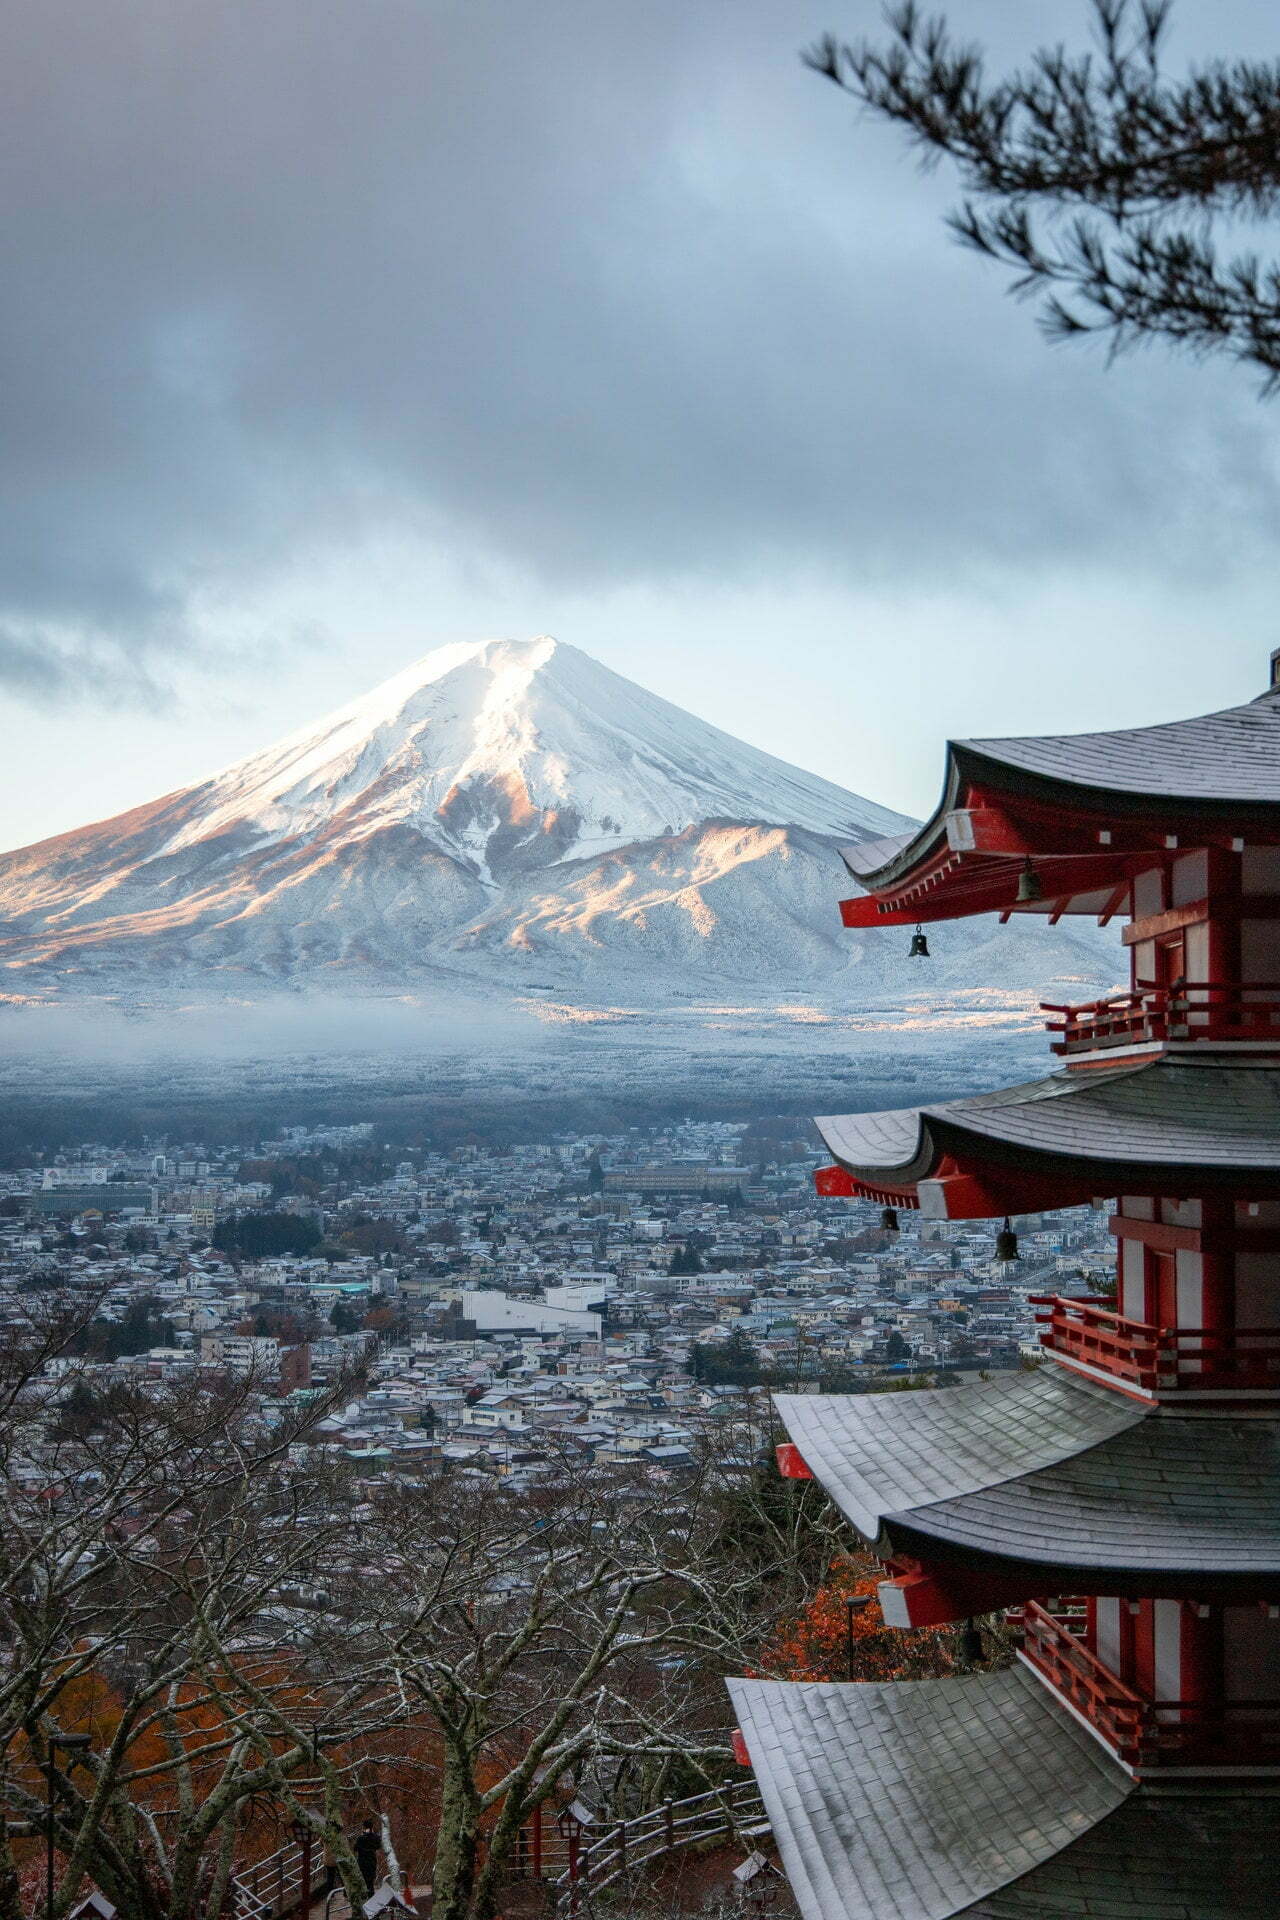 Zou jij op vakantie gaan naar deze winterse bestemming in Japan? 23